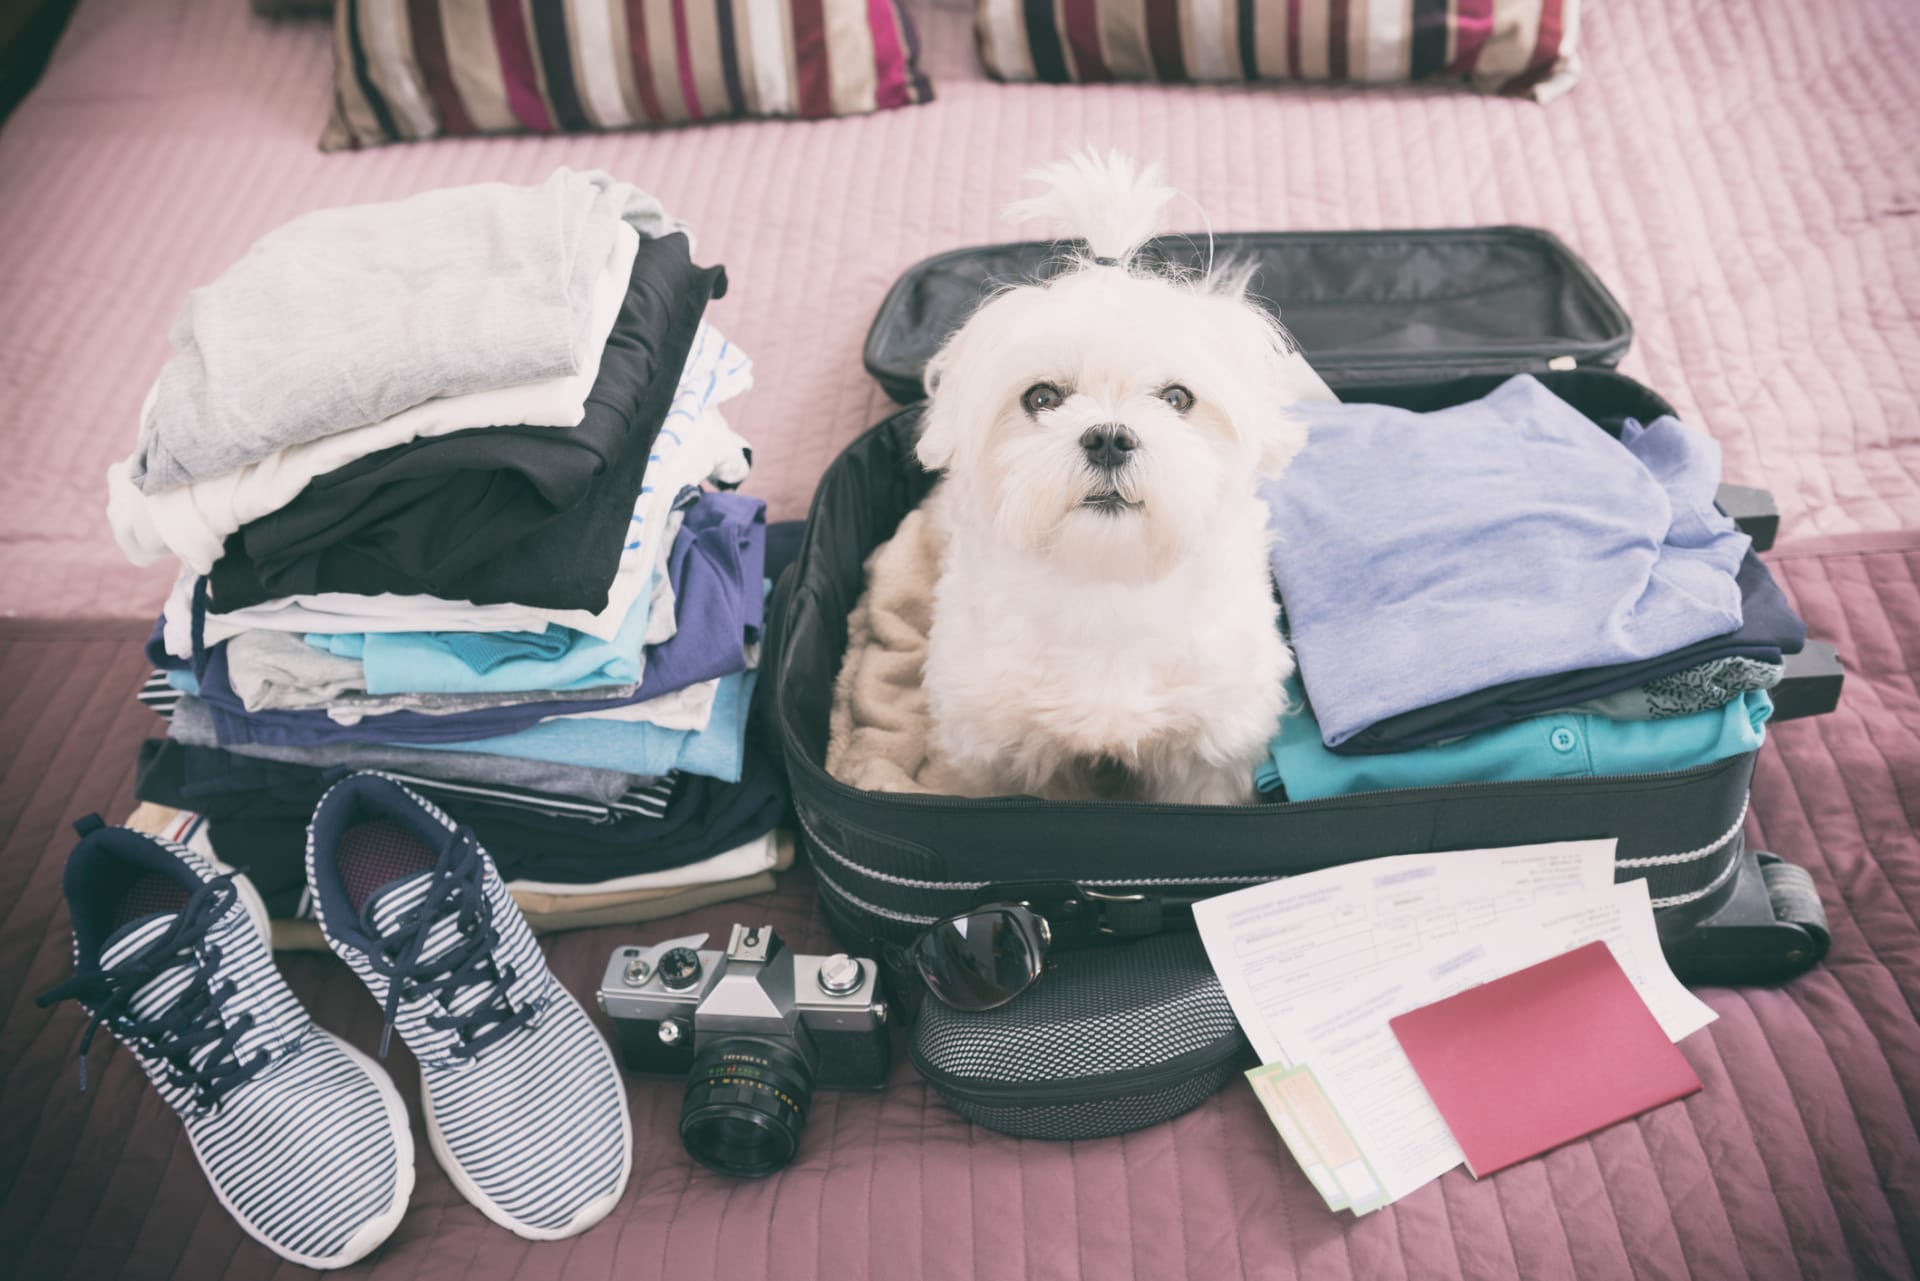 Vzít s sebou na zahraniční dovolenou psa, nebo ne?